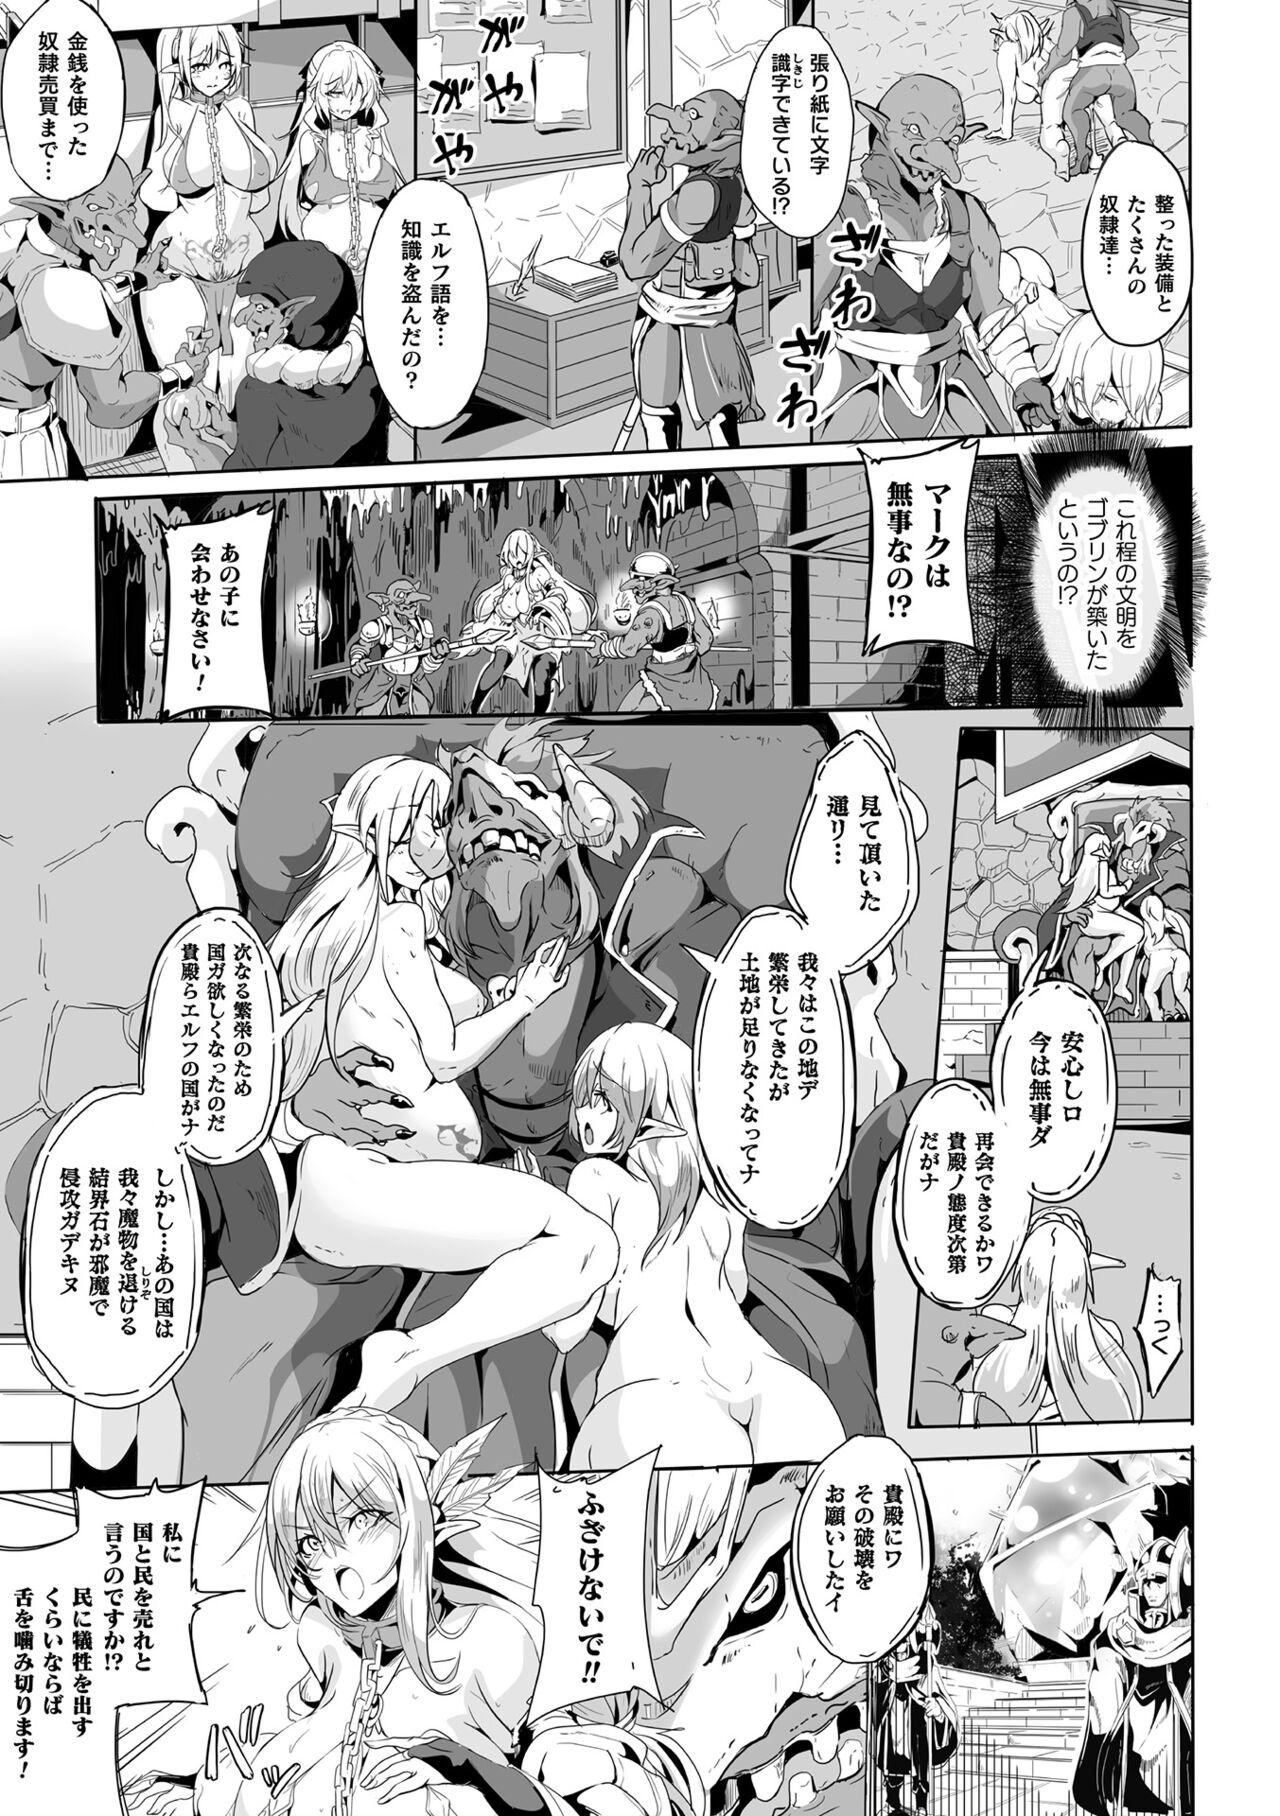 Dicks Kukkoro Heroines Vol. 24 Lovers - Page 7